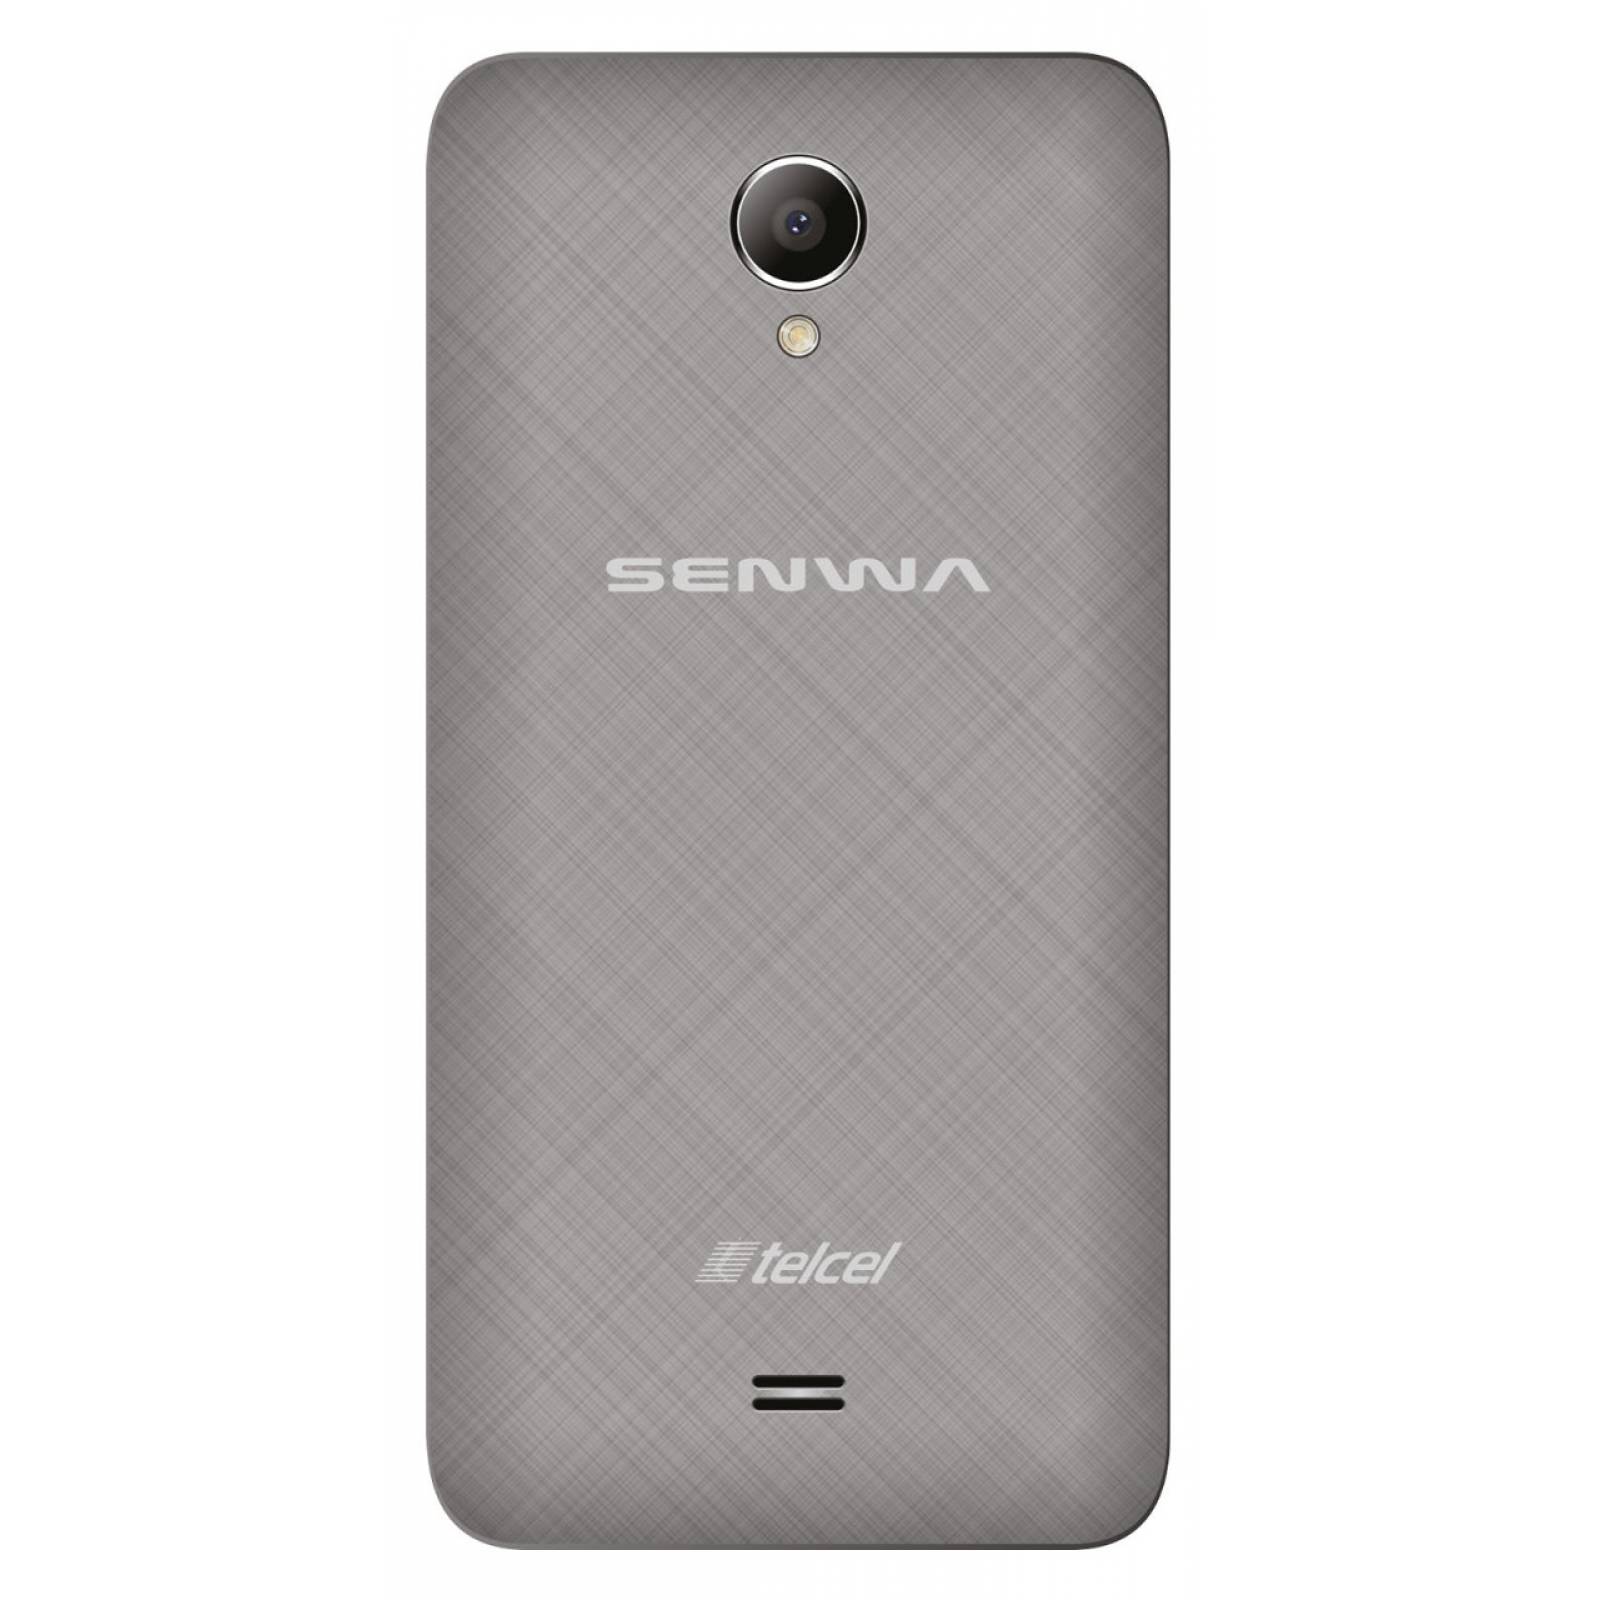 Celular SENWA LTE LS50 PEGASUS Color PLATA Telcel